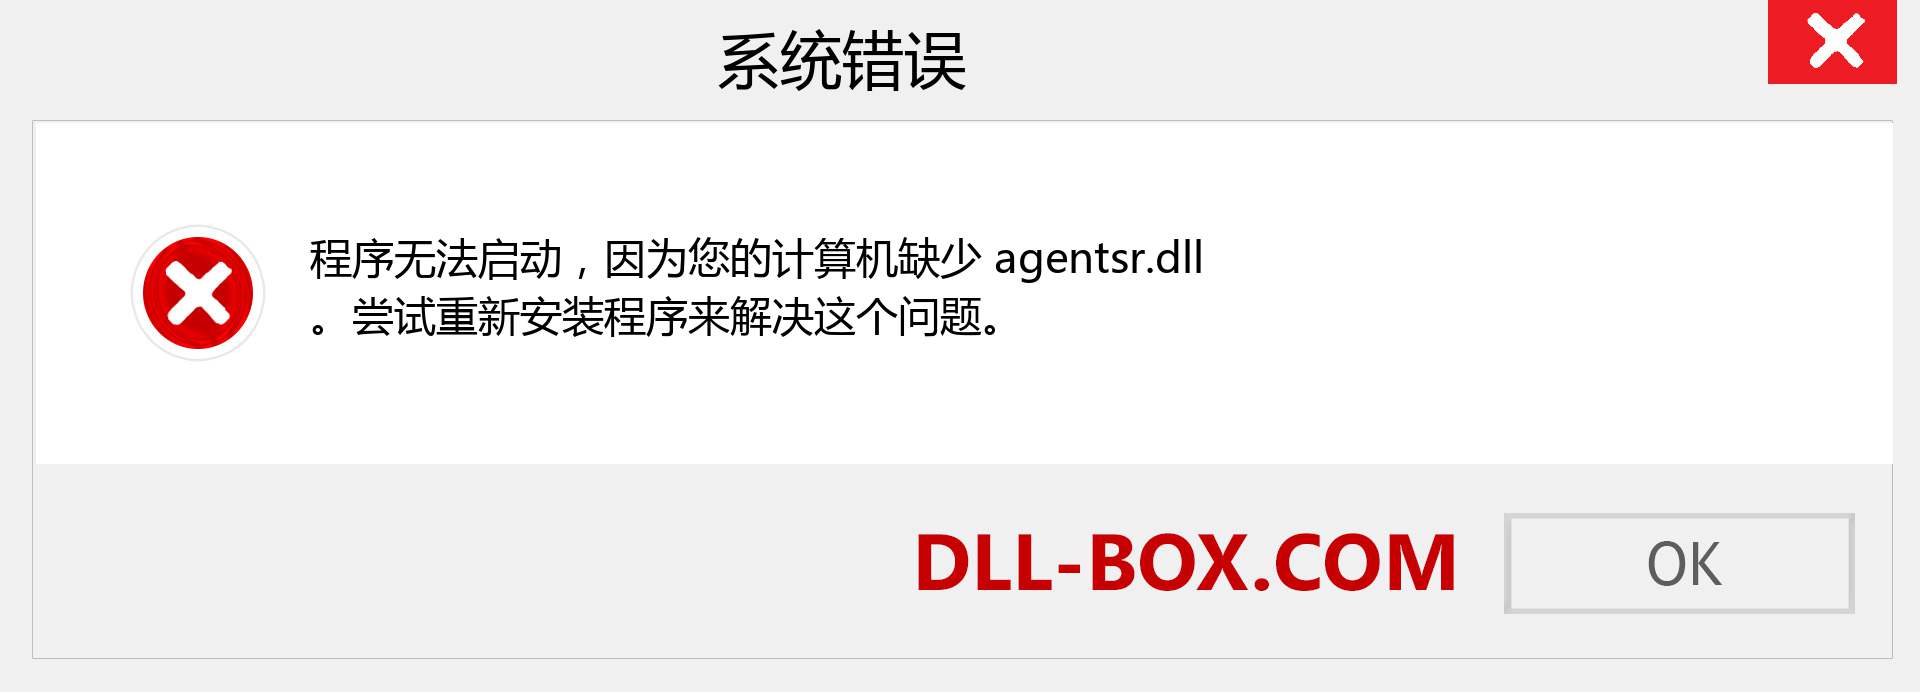 agentsr.dll 文件丢失？。 适用于 Windows 7、8、10 的下载 - 修复 Windows、照片、图像上的 agentsr dll 丢失错误